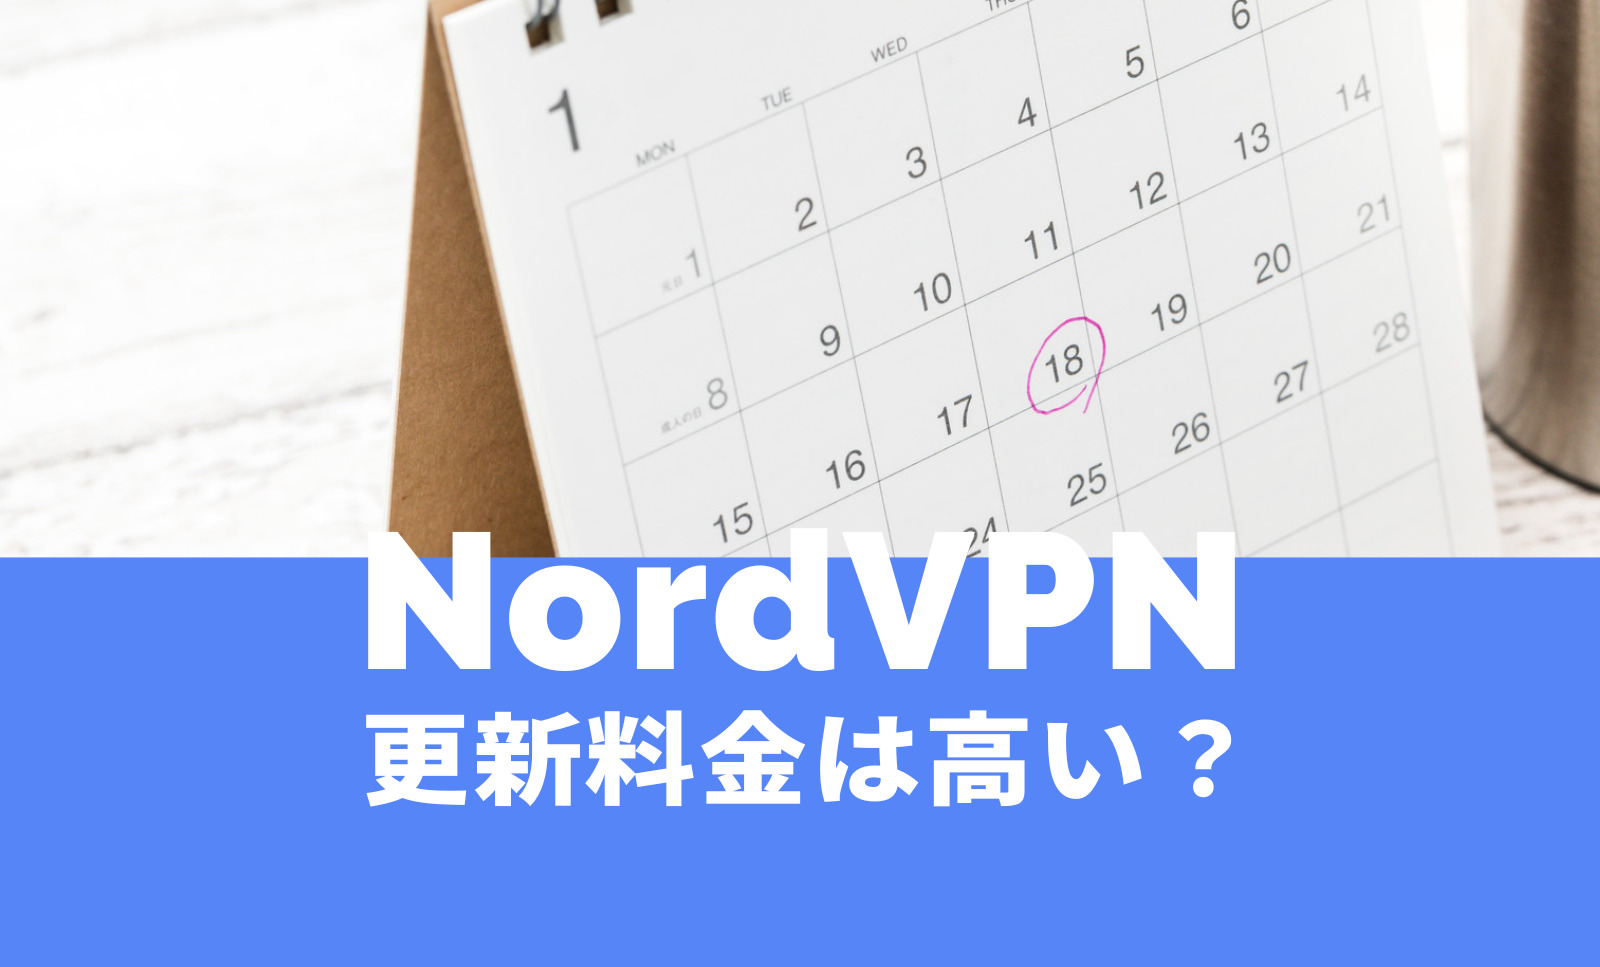 NordVPN(ノードVPN)で2年目以降や2年後の料金は高いのか解説。のサムネイル画像